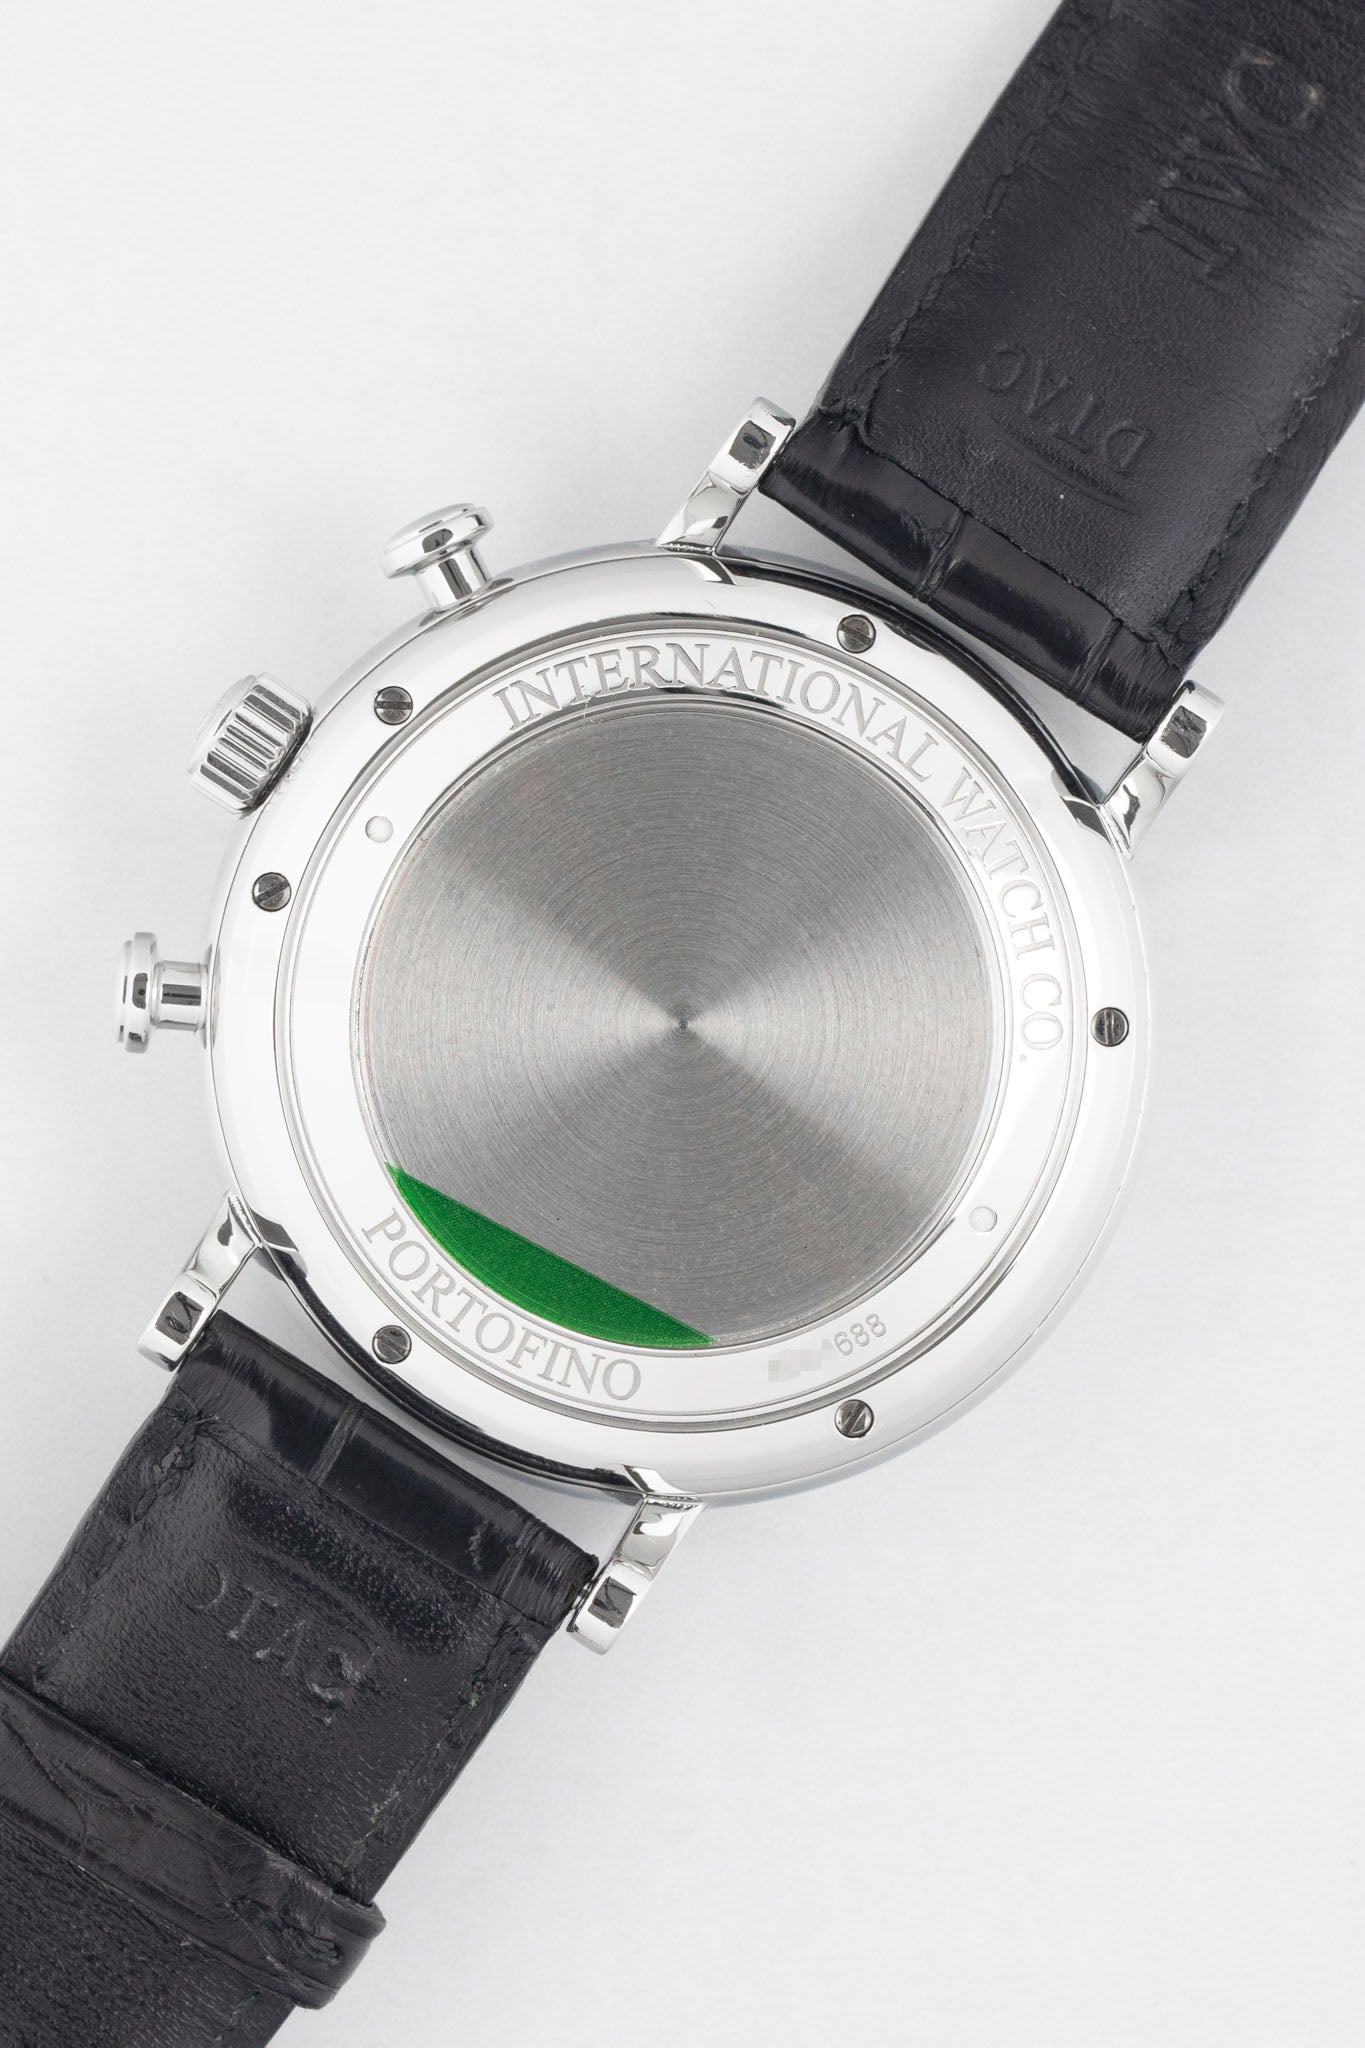 IWC Portofino 39 mm Watch in Silver Dial